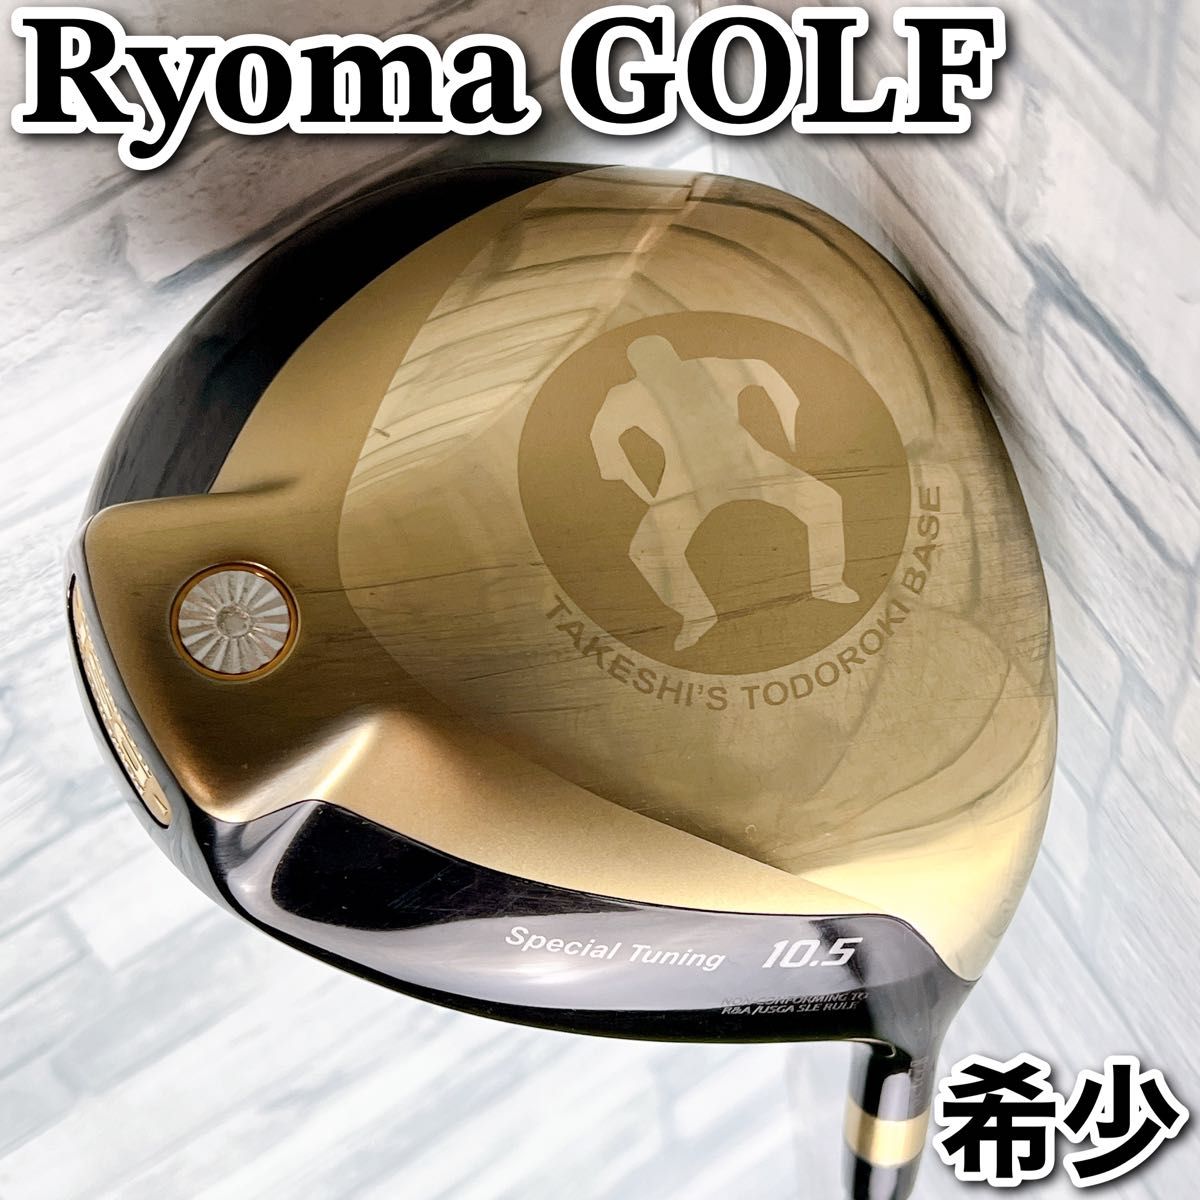 激レア ビートたけし RYOMA GOLF TAKESHI'S ドライバー リョーマ ゴルフ SPECIAL TUNING 高反発